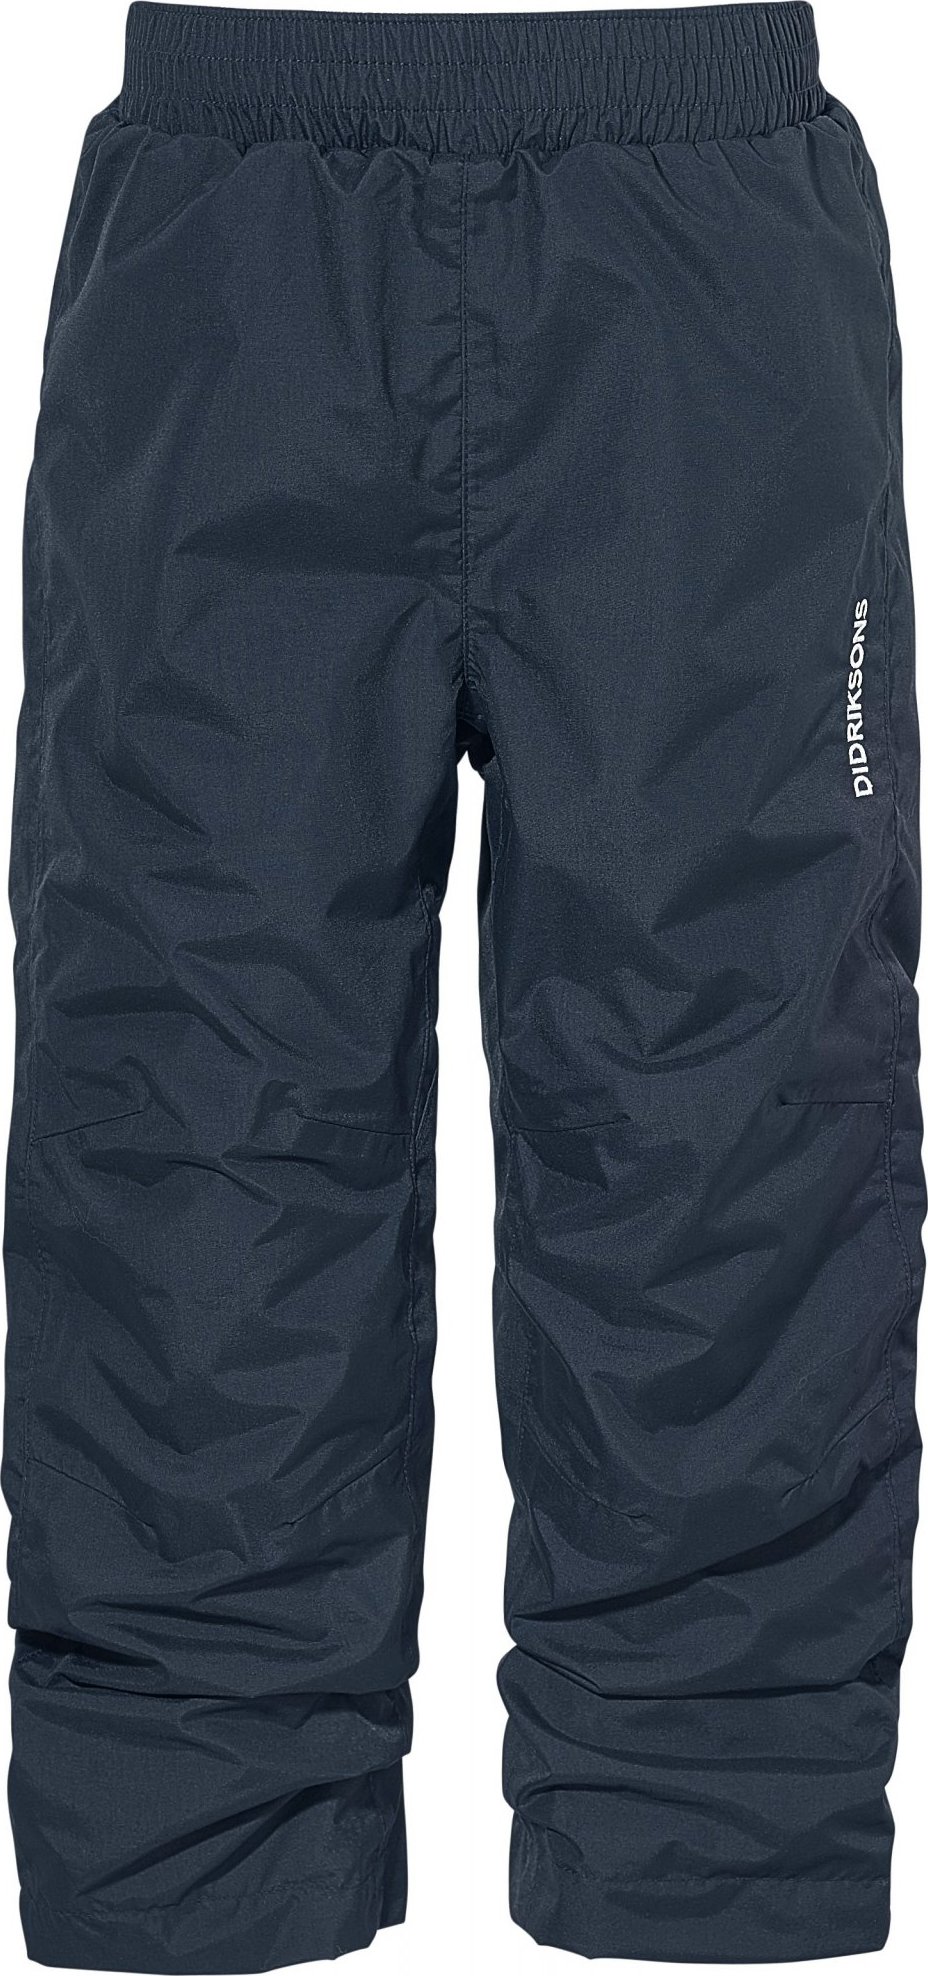 Dětské outdoorové kalhoty DIDRIKSONS Nobi modré Velikost: 80